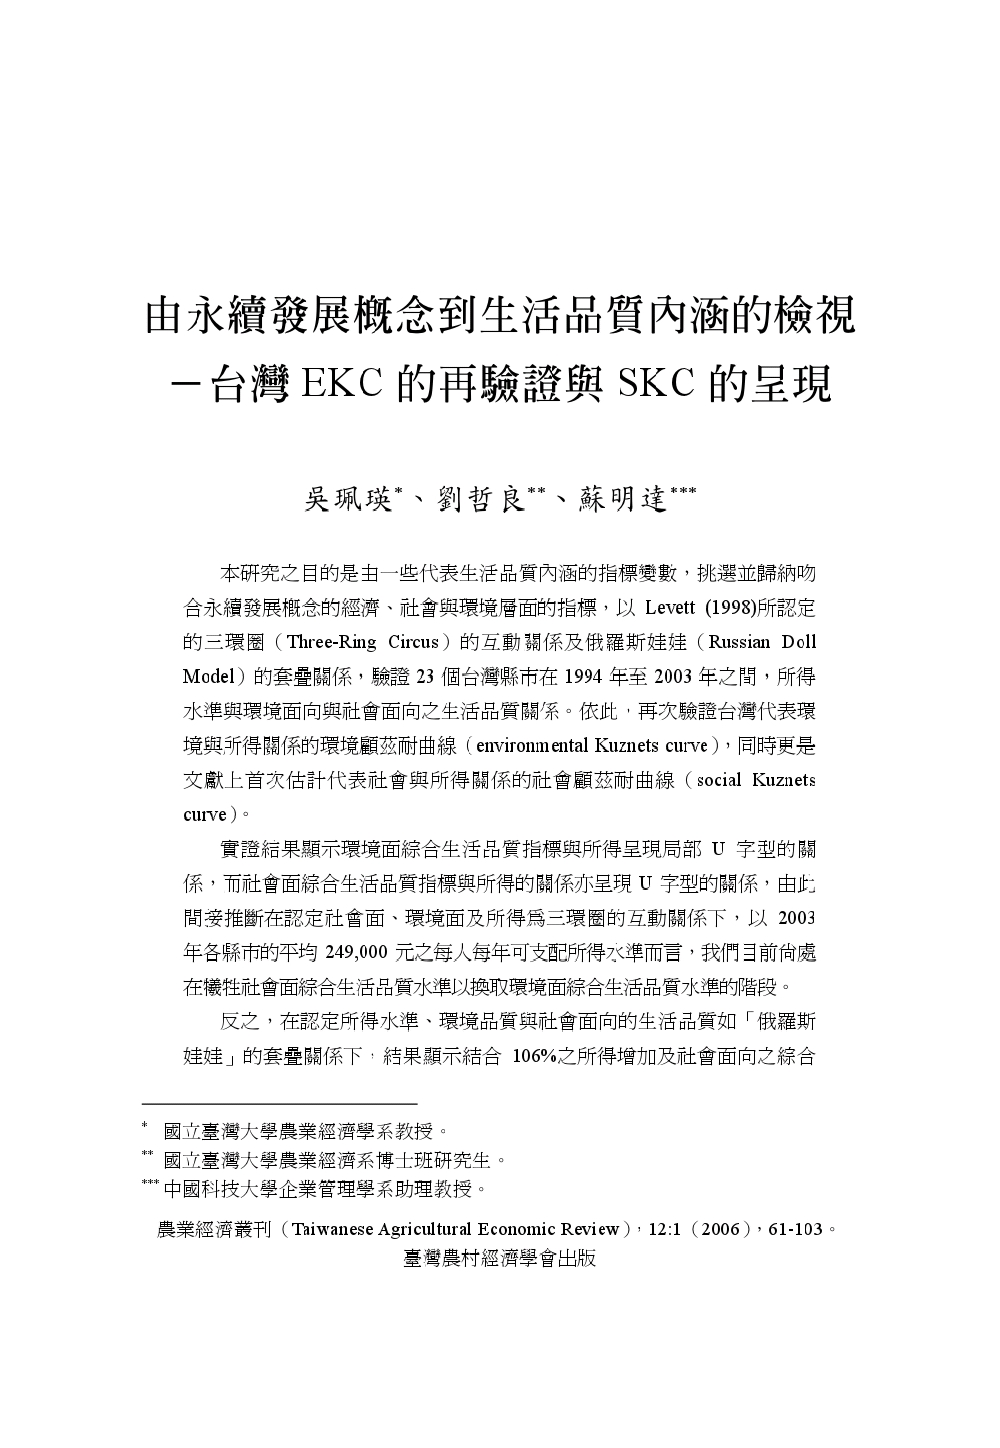 由永續發展概念到生活品質內涵的檢視___台灣EKC的再驗證與SKC的呈現.jpg